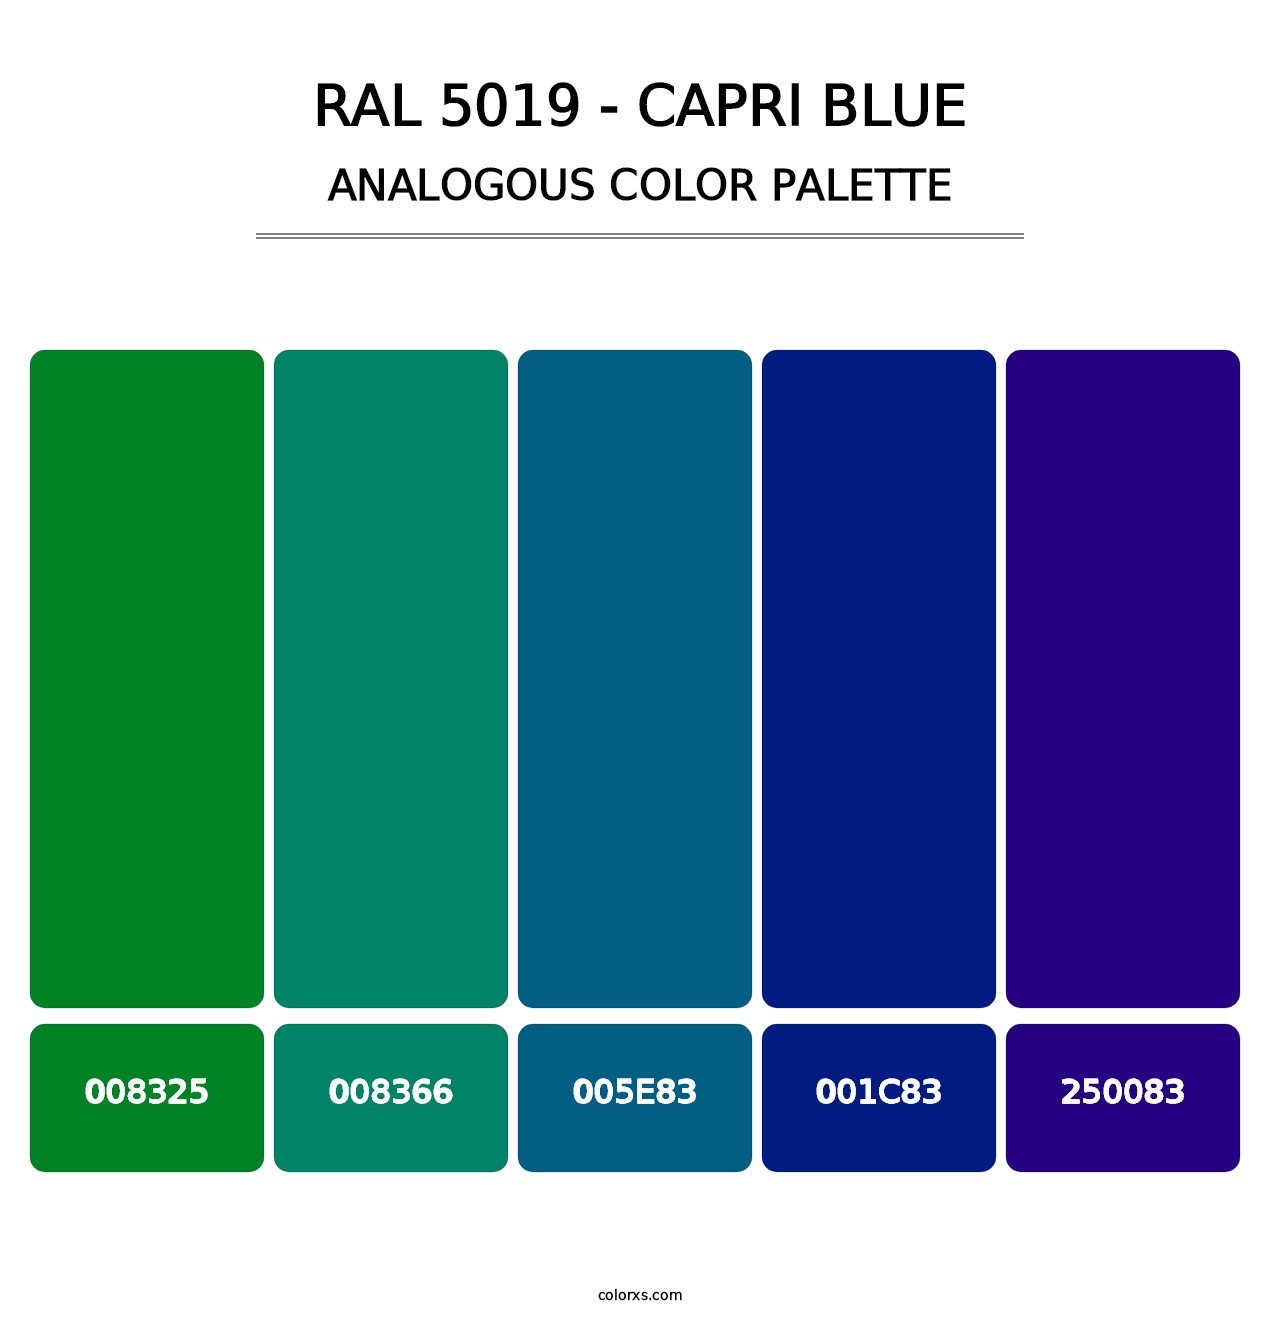 RAL 5019 - Capri Blue - Analogous Color Palette